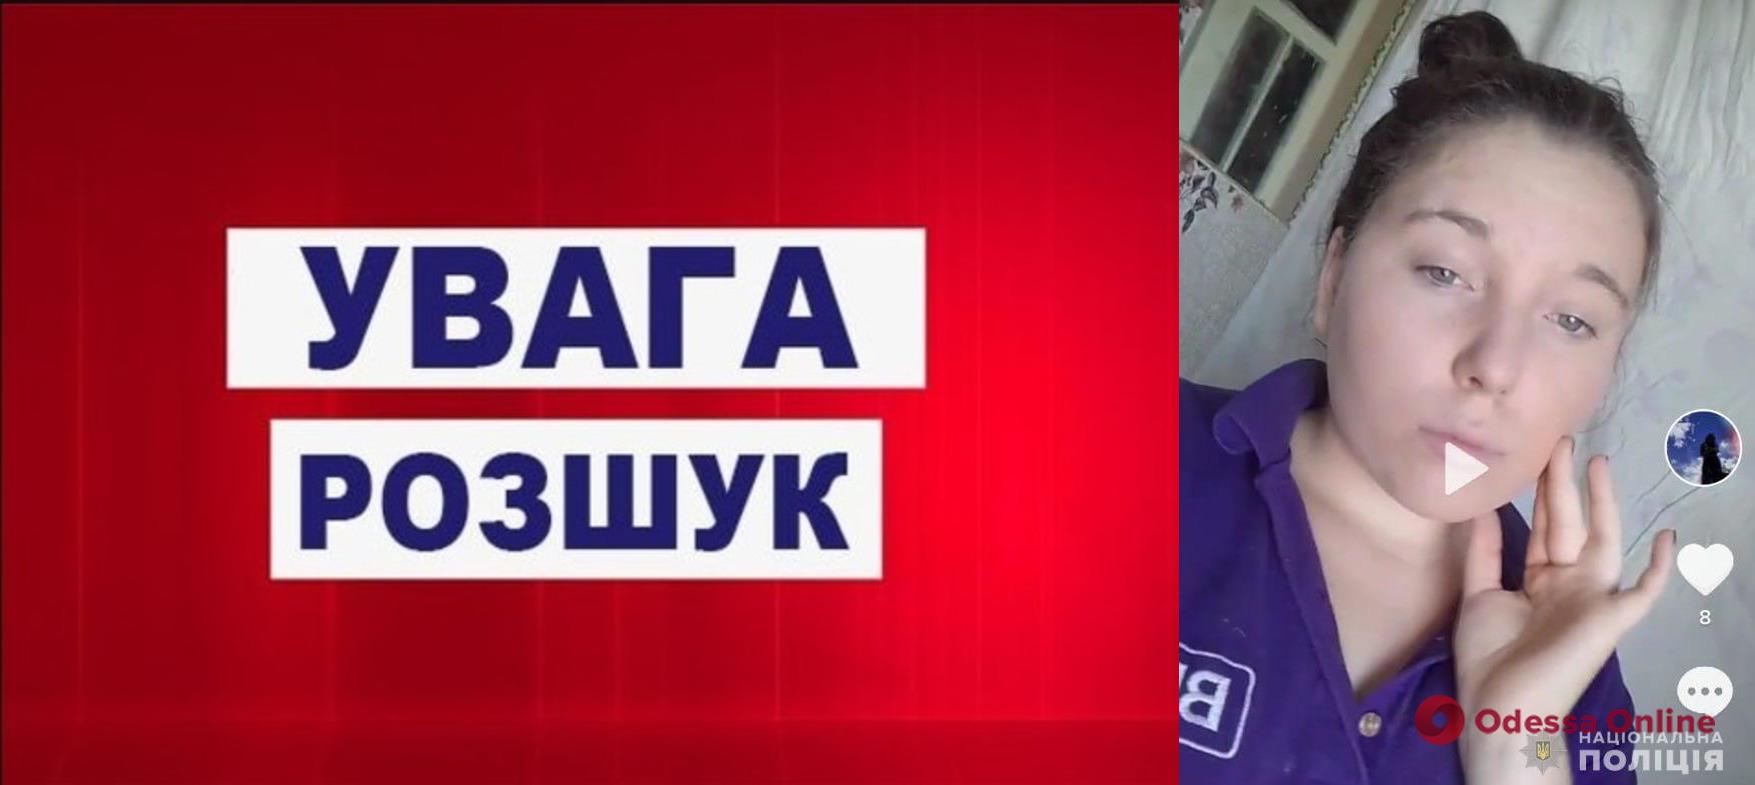 В Одесской области пропала без вести 14-летняя девушка (обновлено)